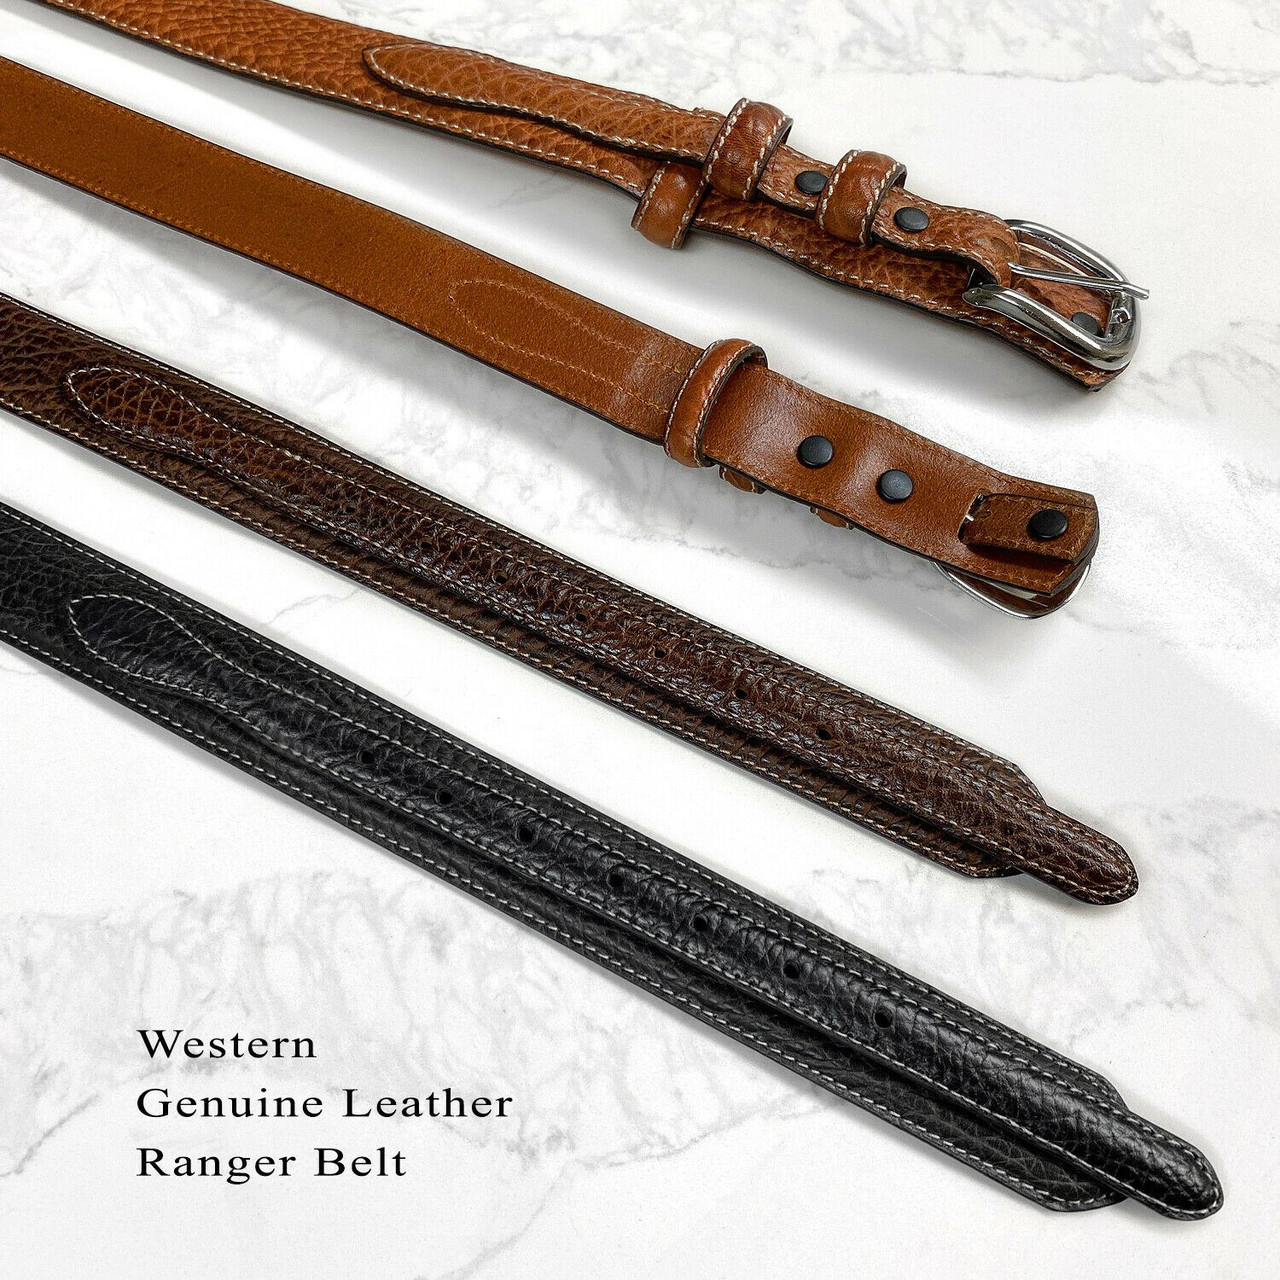 Western Ranger Belt Genuine Leather Bison Ranger Belt 1-3/8